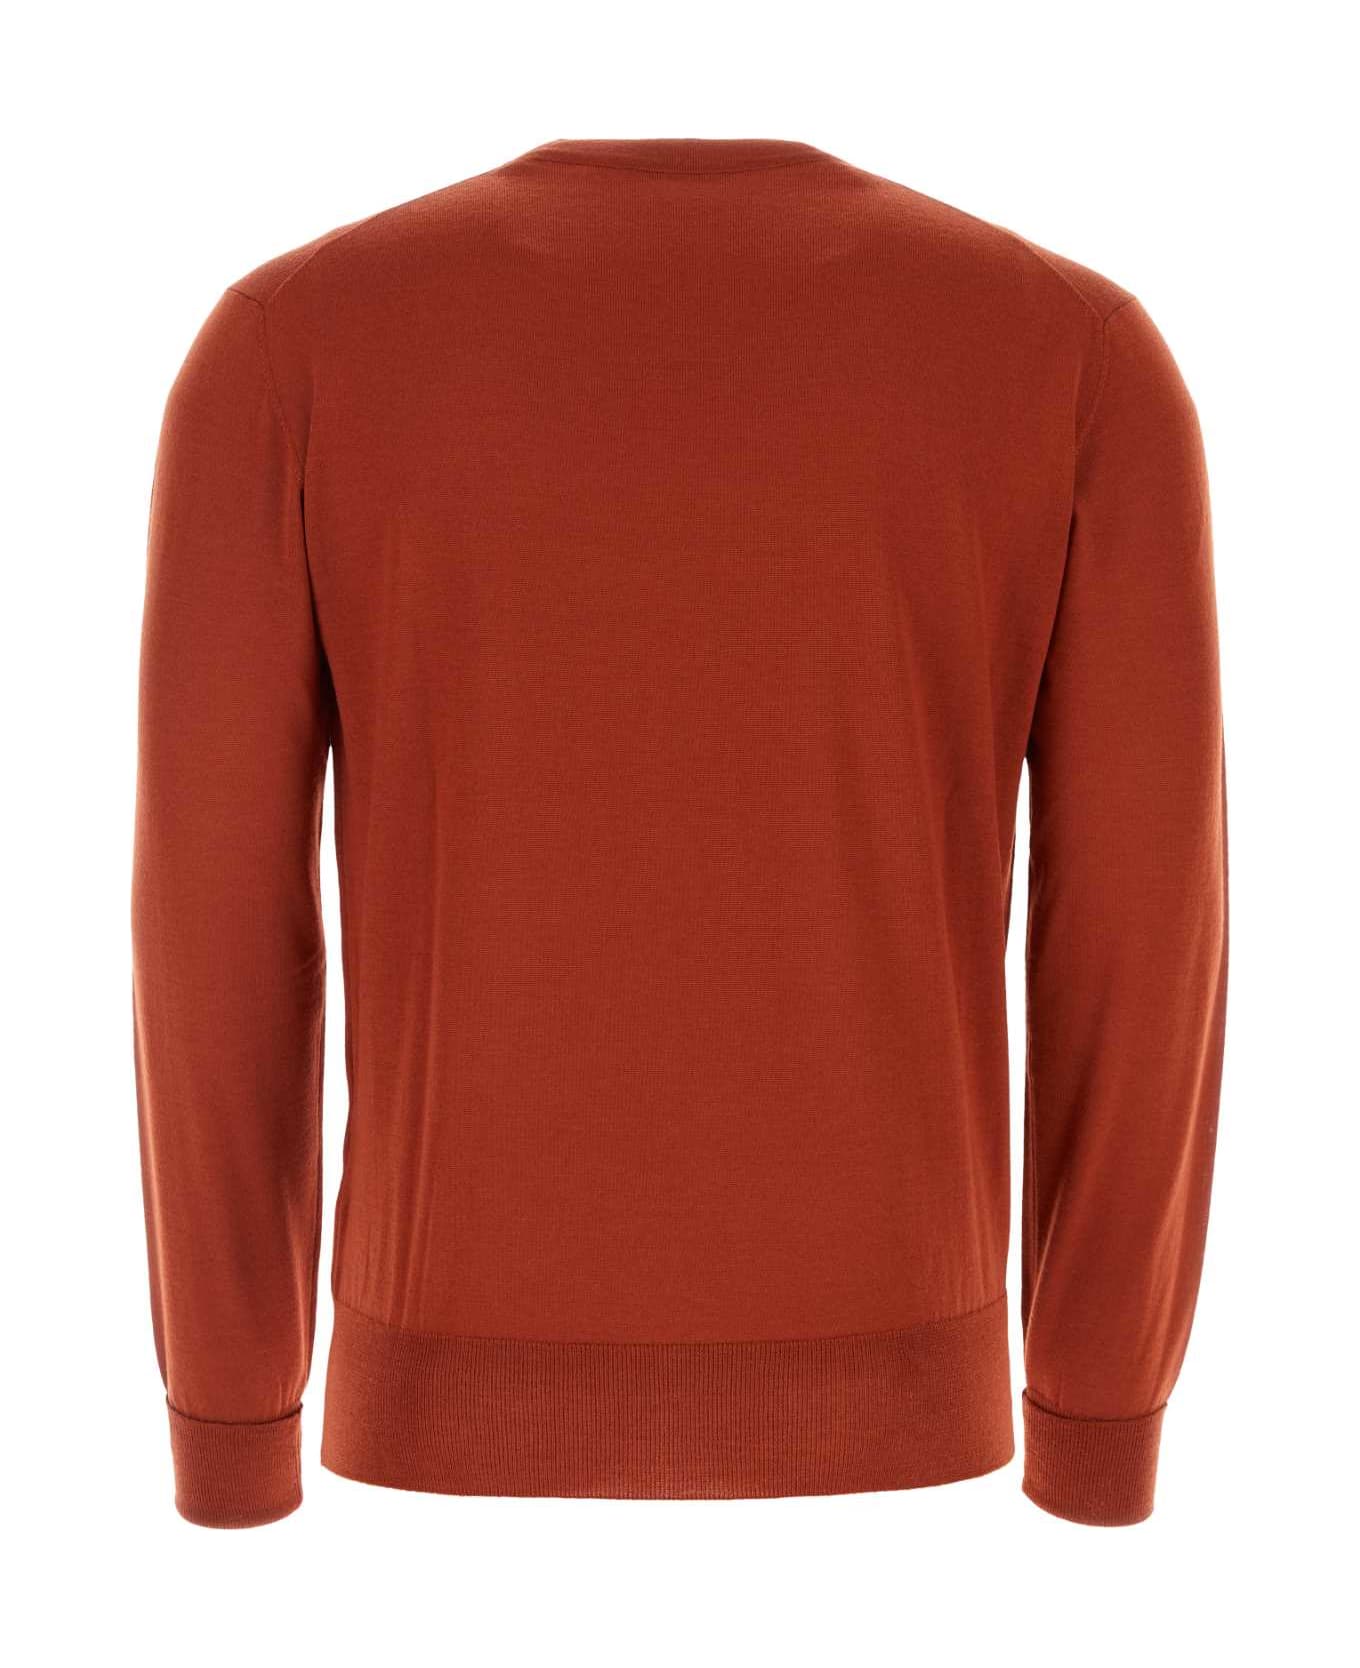 PT Torino Brick Wool Sweater - 0870